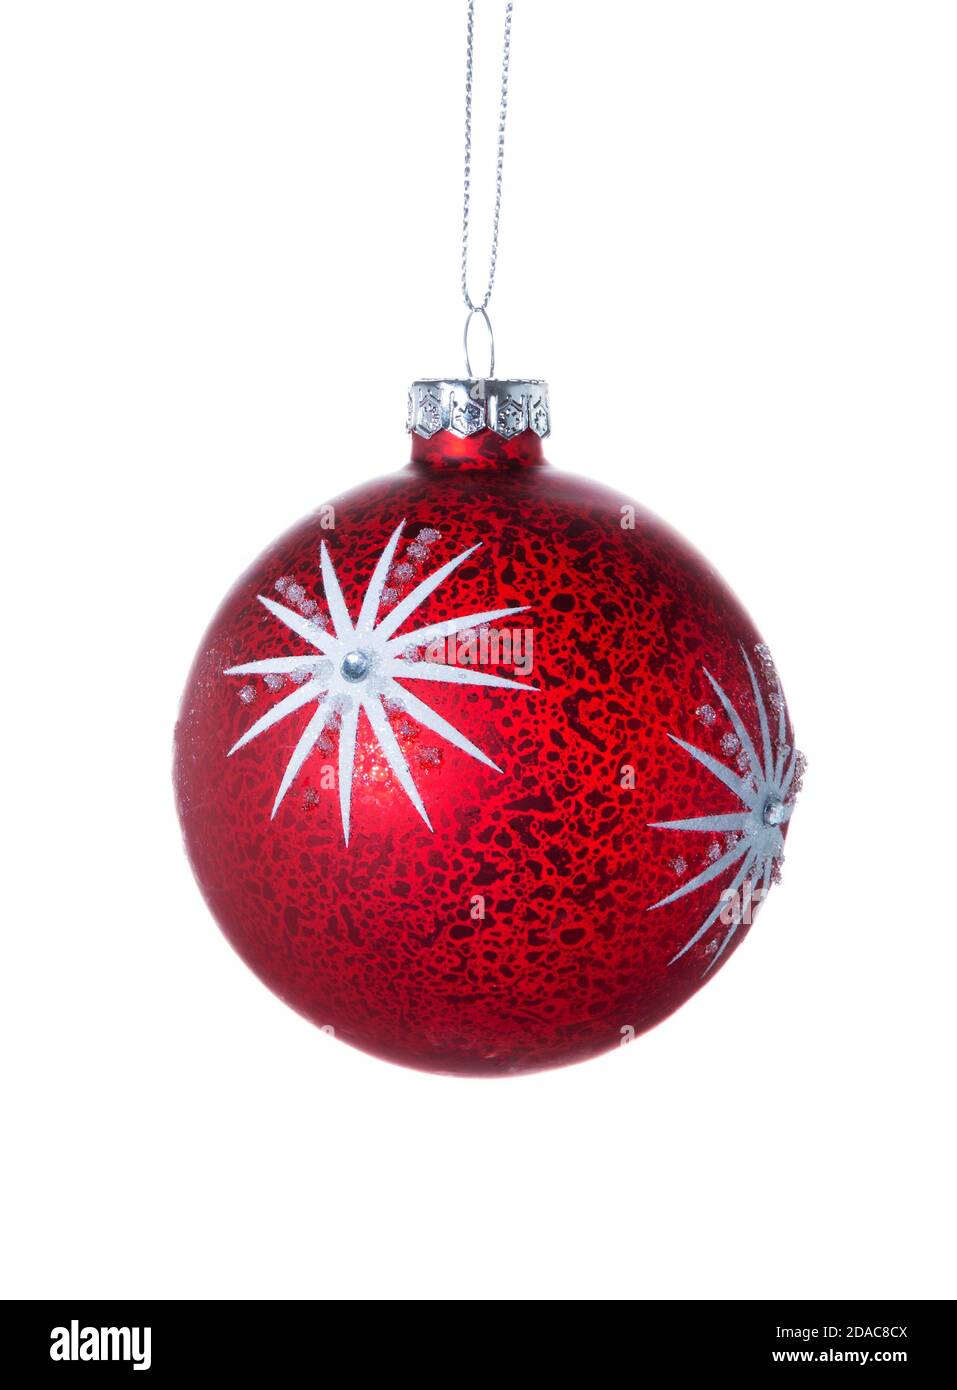 Rote weihnachtskugel hängt isoliert auf weißem Hintergrund. Weihnachten Glaskugel. Vorlage für Weihnachtsdekoration. Stockfoto